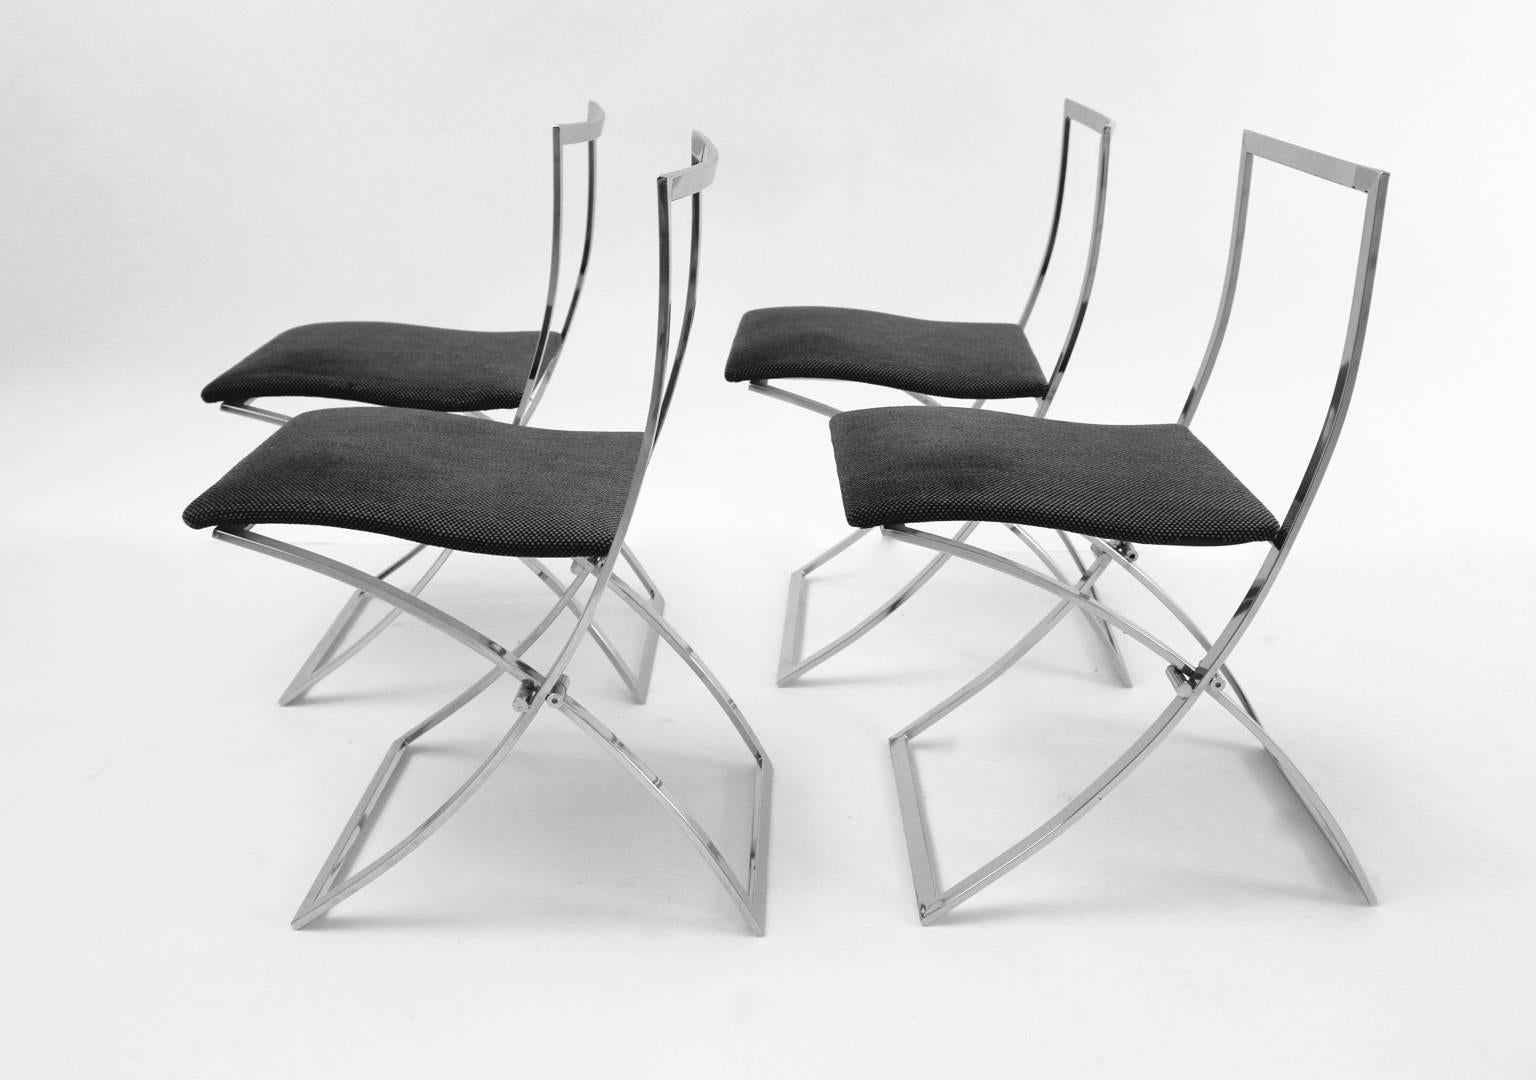 Mid century modern vintage set of 4 chairs designed by Marcello Cuneo 1970s Italy and produced by Mobel.
Das Gestell der klappbaren Stühle ist verchromt und die Polsterung ist mit einem hochwertigen dunkelgrauen Textilgewebe bezogen.
Der alte